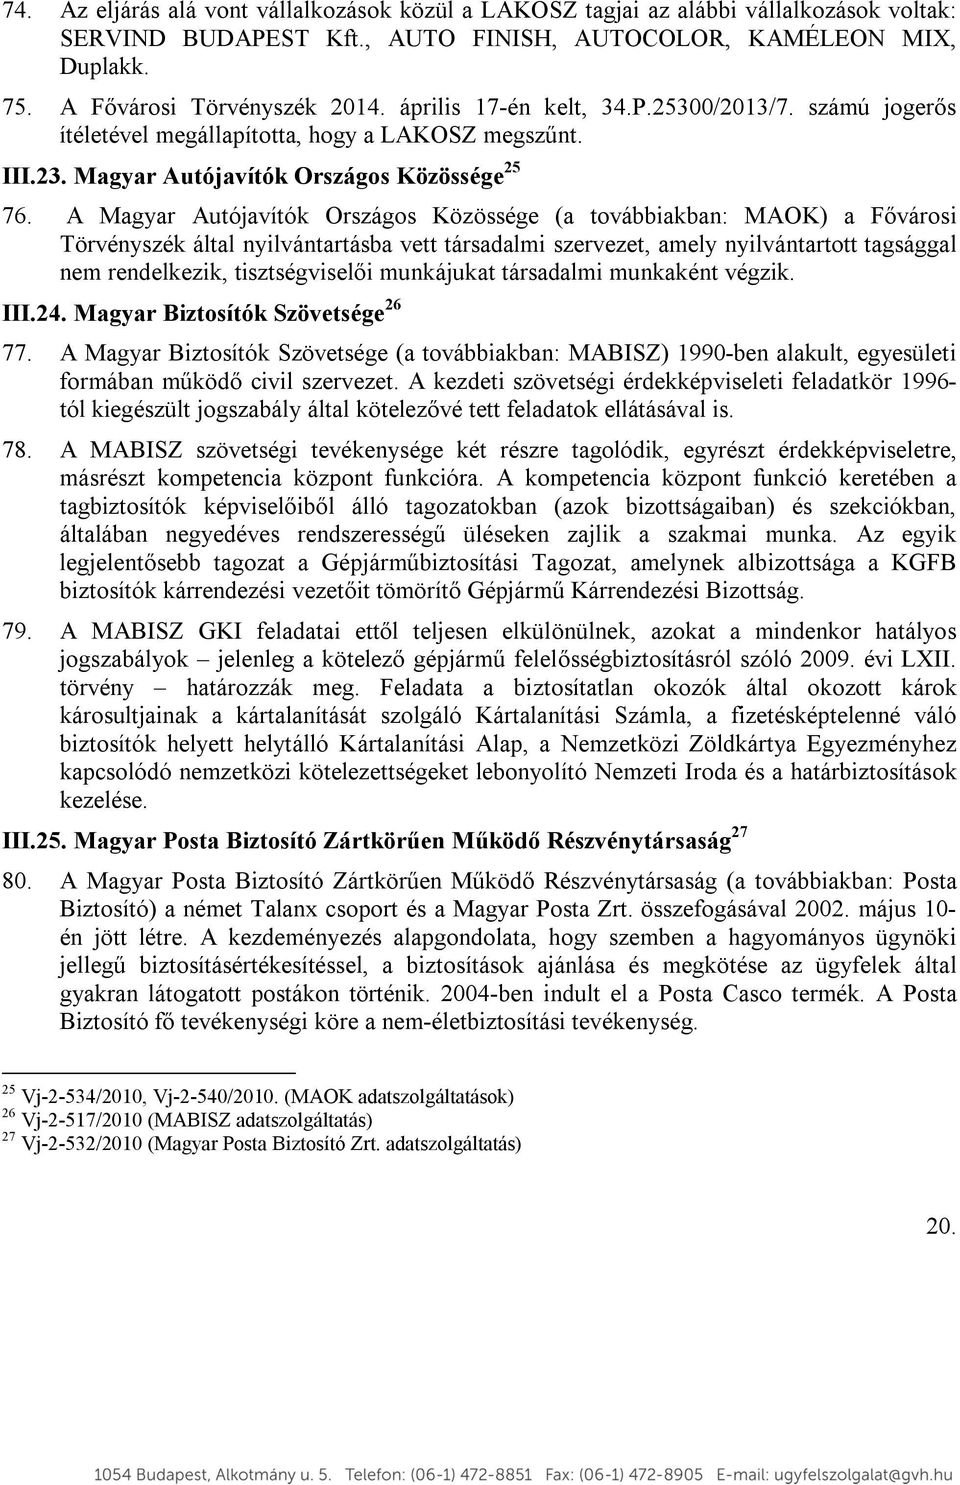 A Magyar Autójavítók Országos Közössége (a továbbiakban: MAOK) a Fővárosi Törvényszék által nyilvántartásba vett társadalmi szervezet, amely nyilvántartott tagsággal nem rendelkezik, tisztségviselői